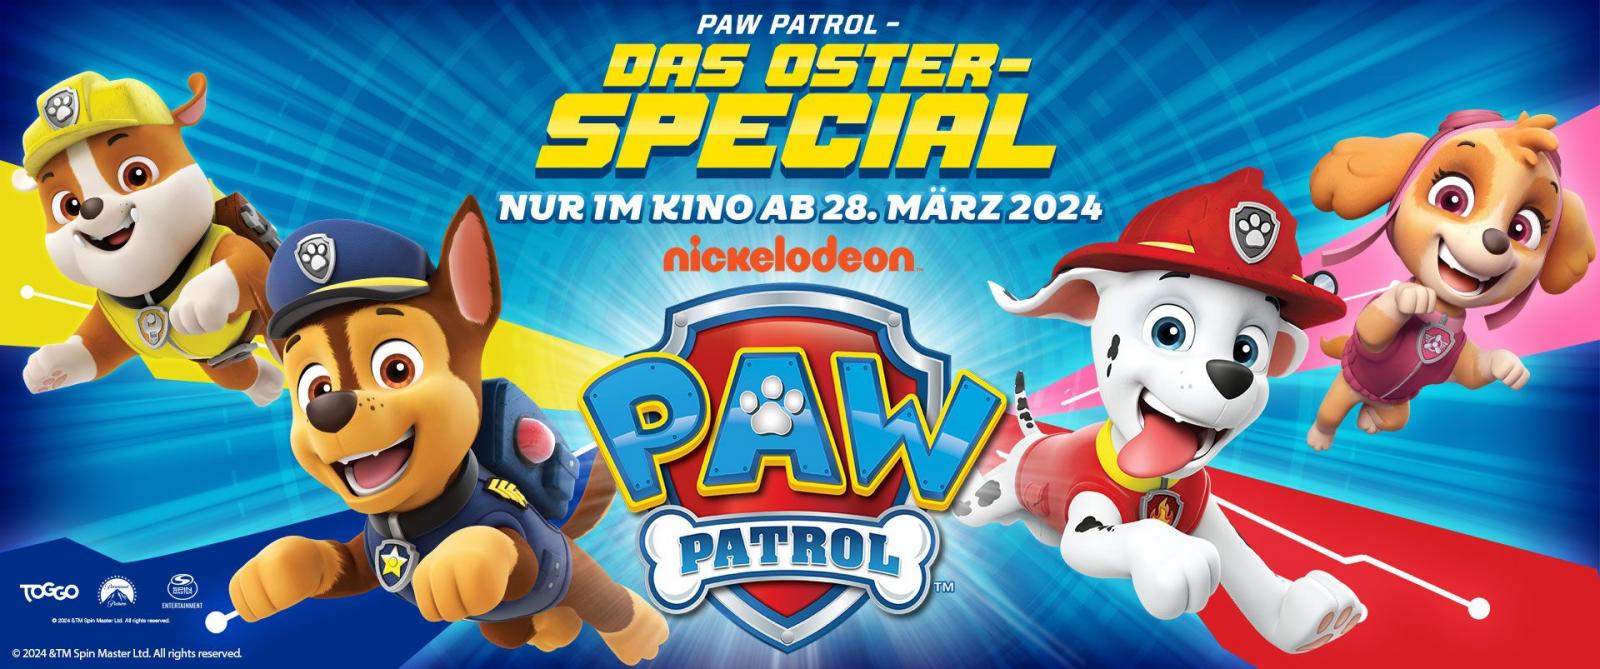 Paw Patrol Oster Spezial